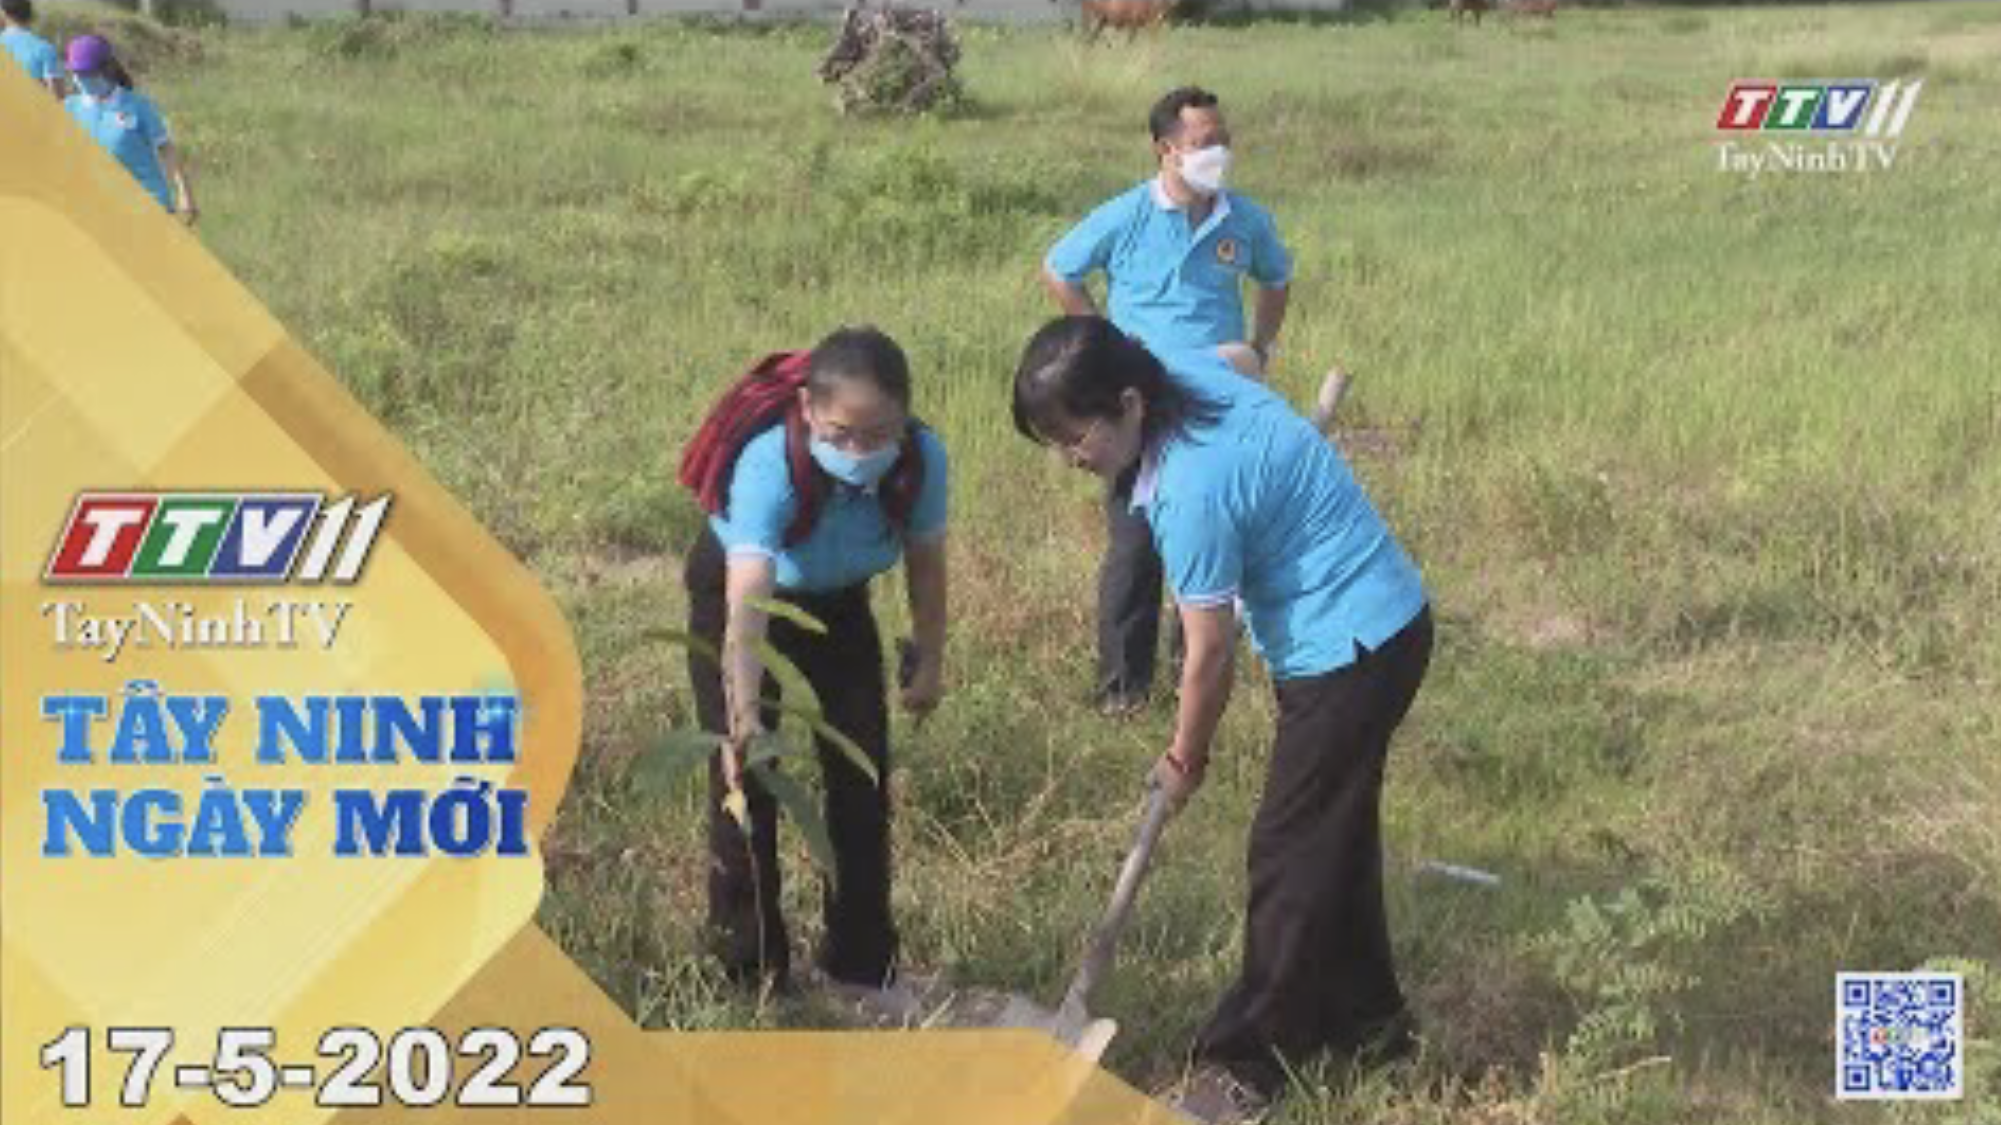 Tây Ninh ngày mới 17-5-2022 | Tin tức hôm nay | TayNinhTV